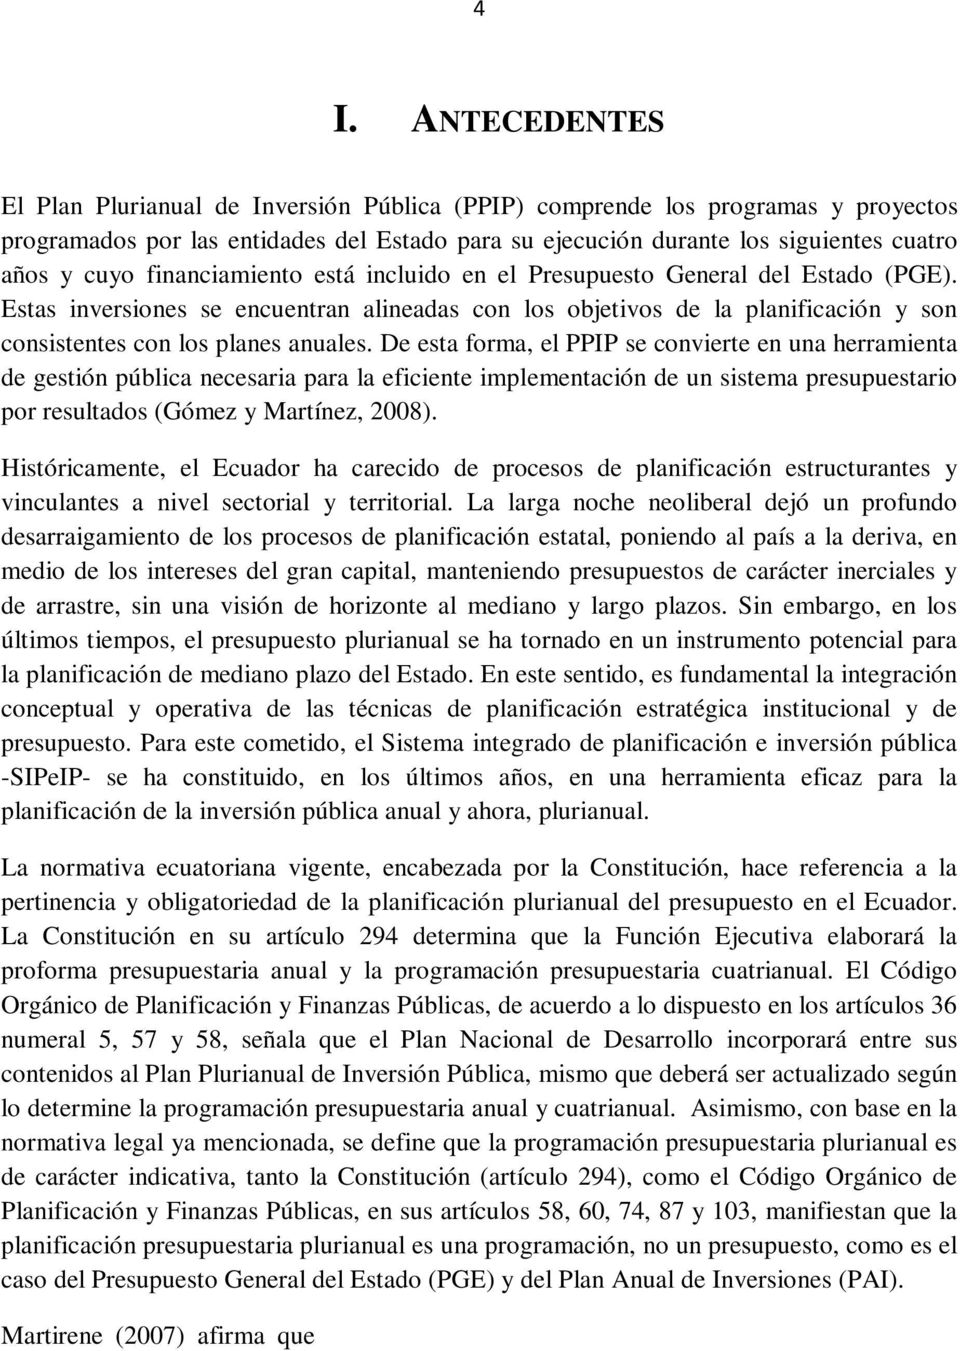 De esta forma, el PPIP se convierte en una herramienta de gestión pública necesaria para la eficiente implementación de un sistema presupuestario por resultados (Gómez y Martínez, 2008).